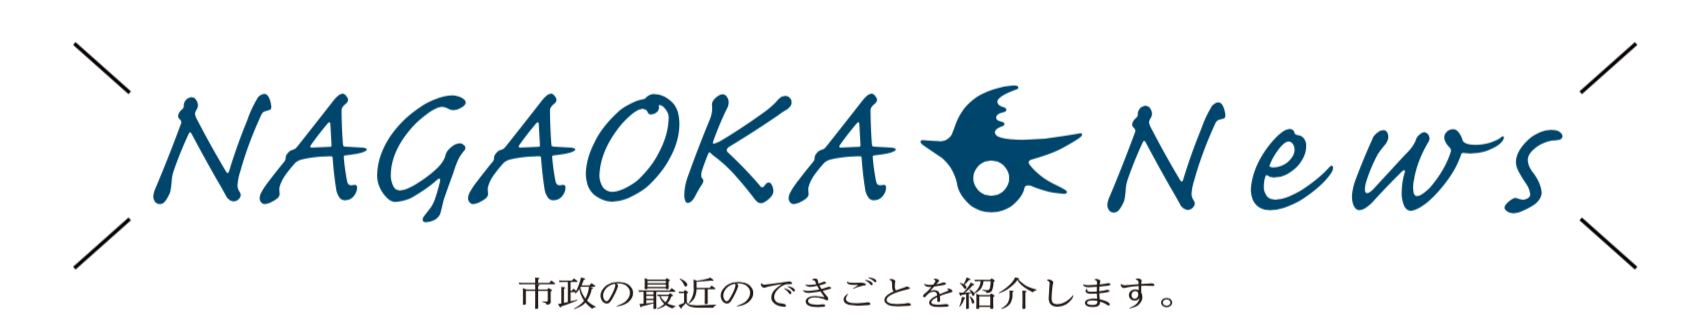 NAGAOKA News